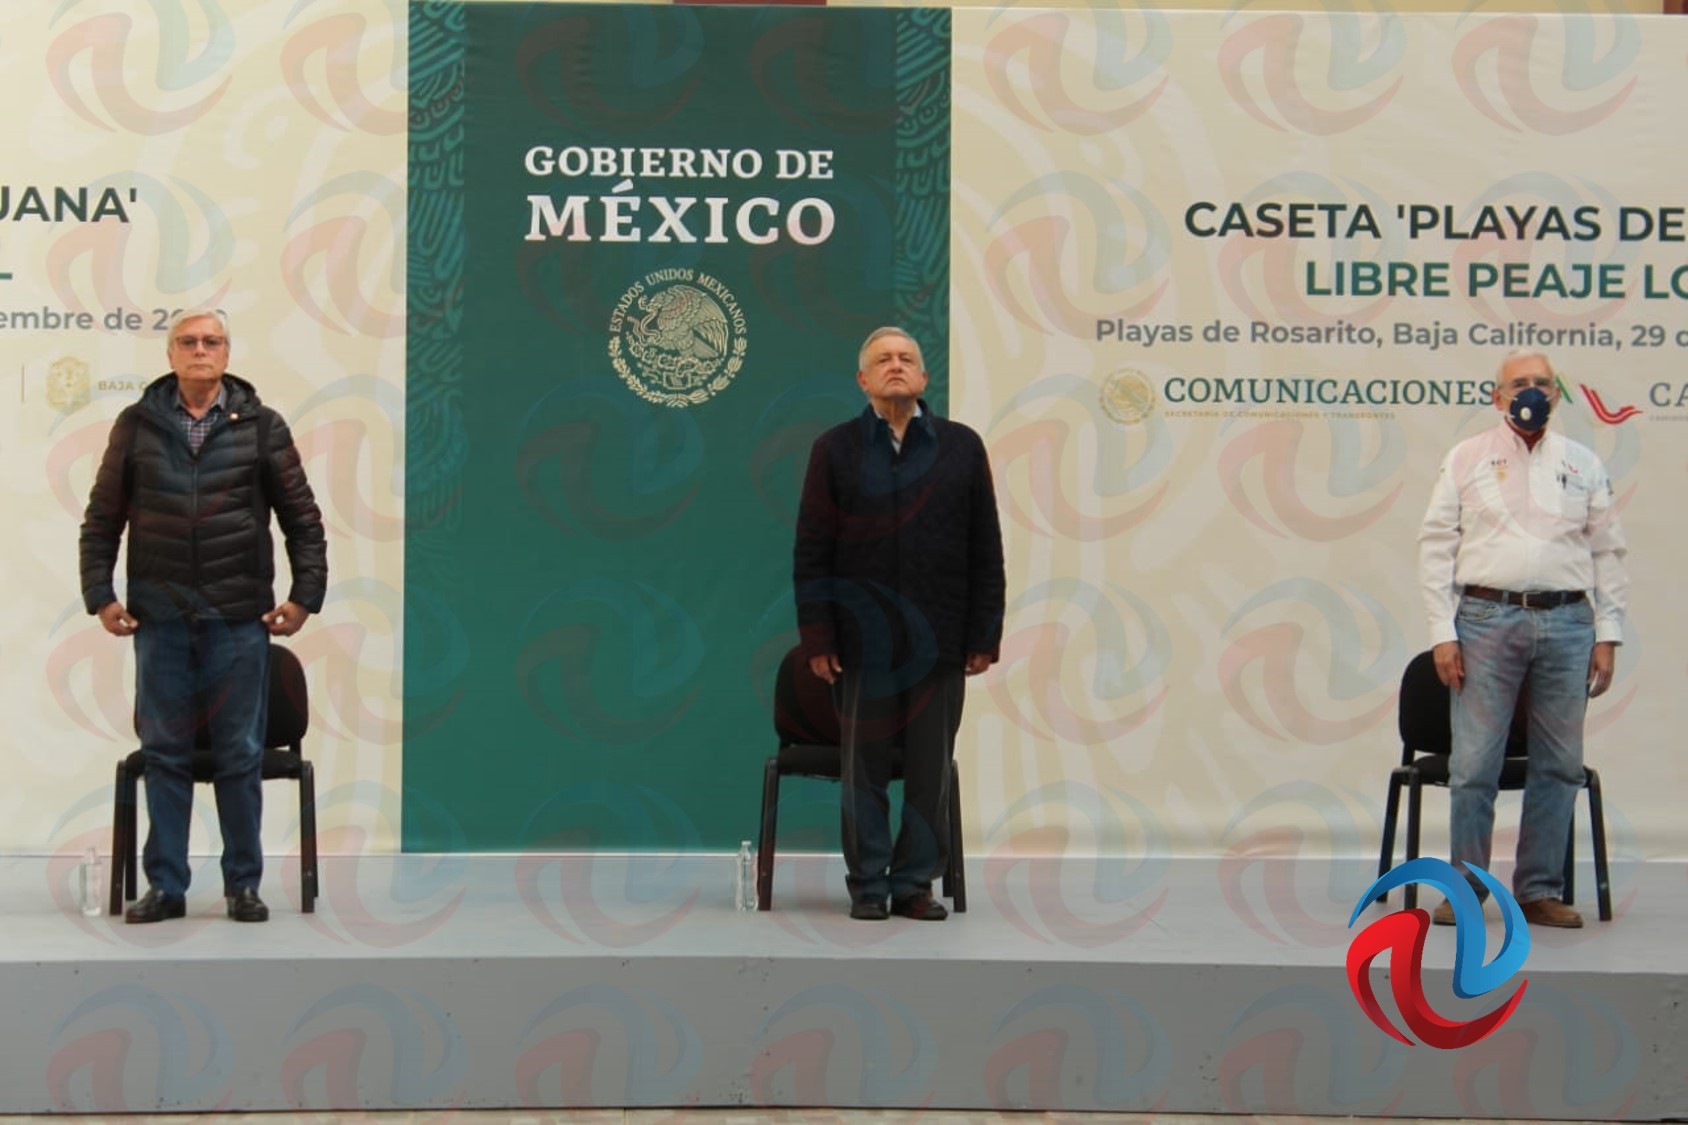 La visita de López Obrador en pocas palabras